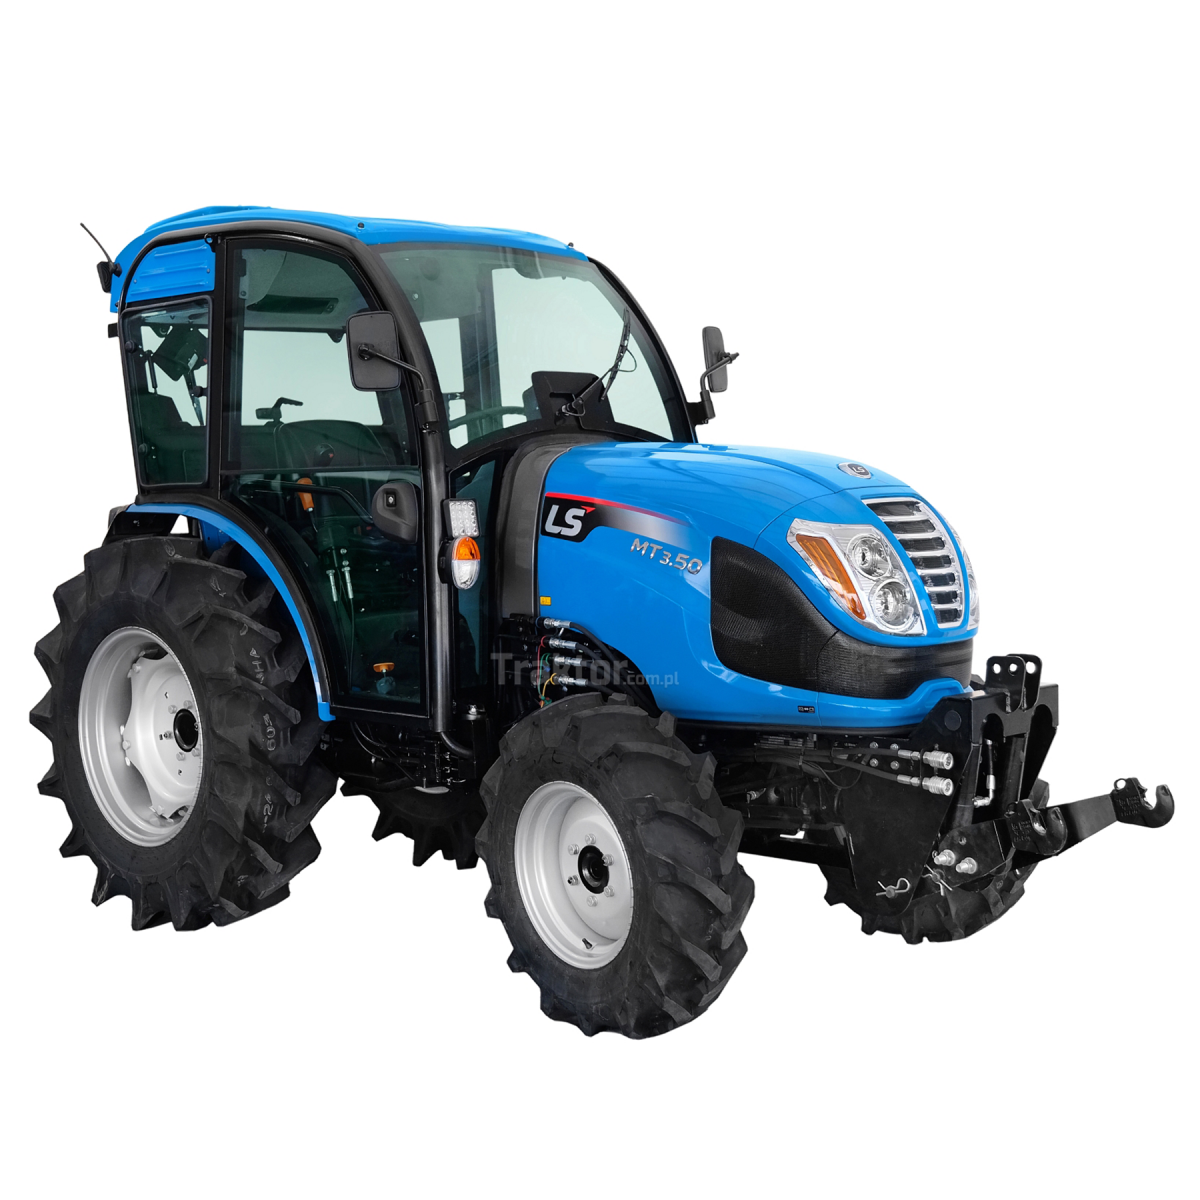 Tractor LS MT3.50 MEC 4x4 - 47 CV / CABINA con aire acondicionado + elevador delantero para el tractor Premium 4FARMER